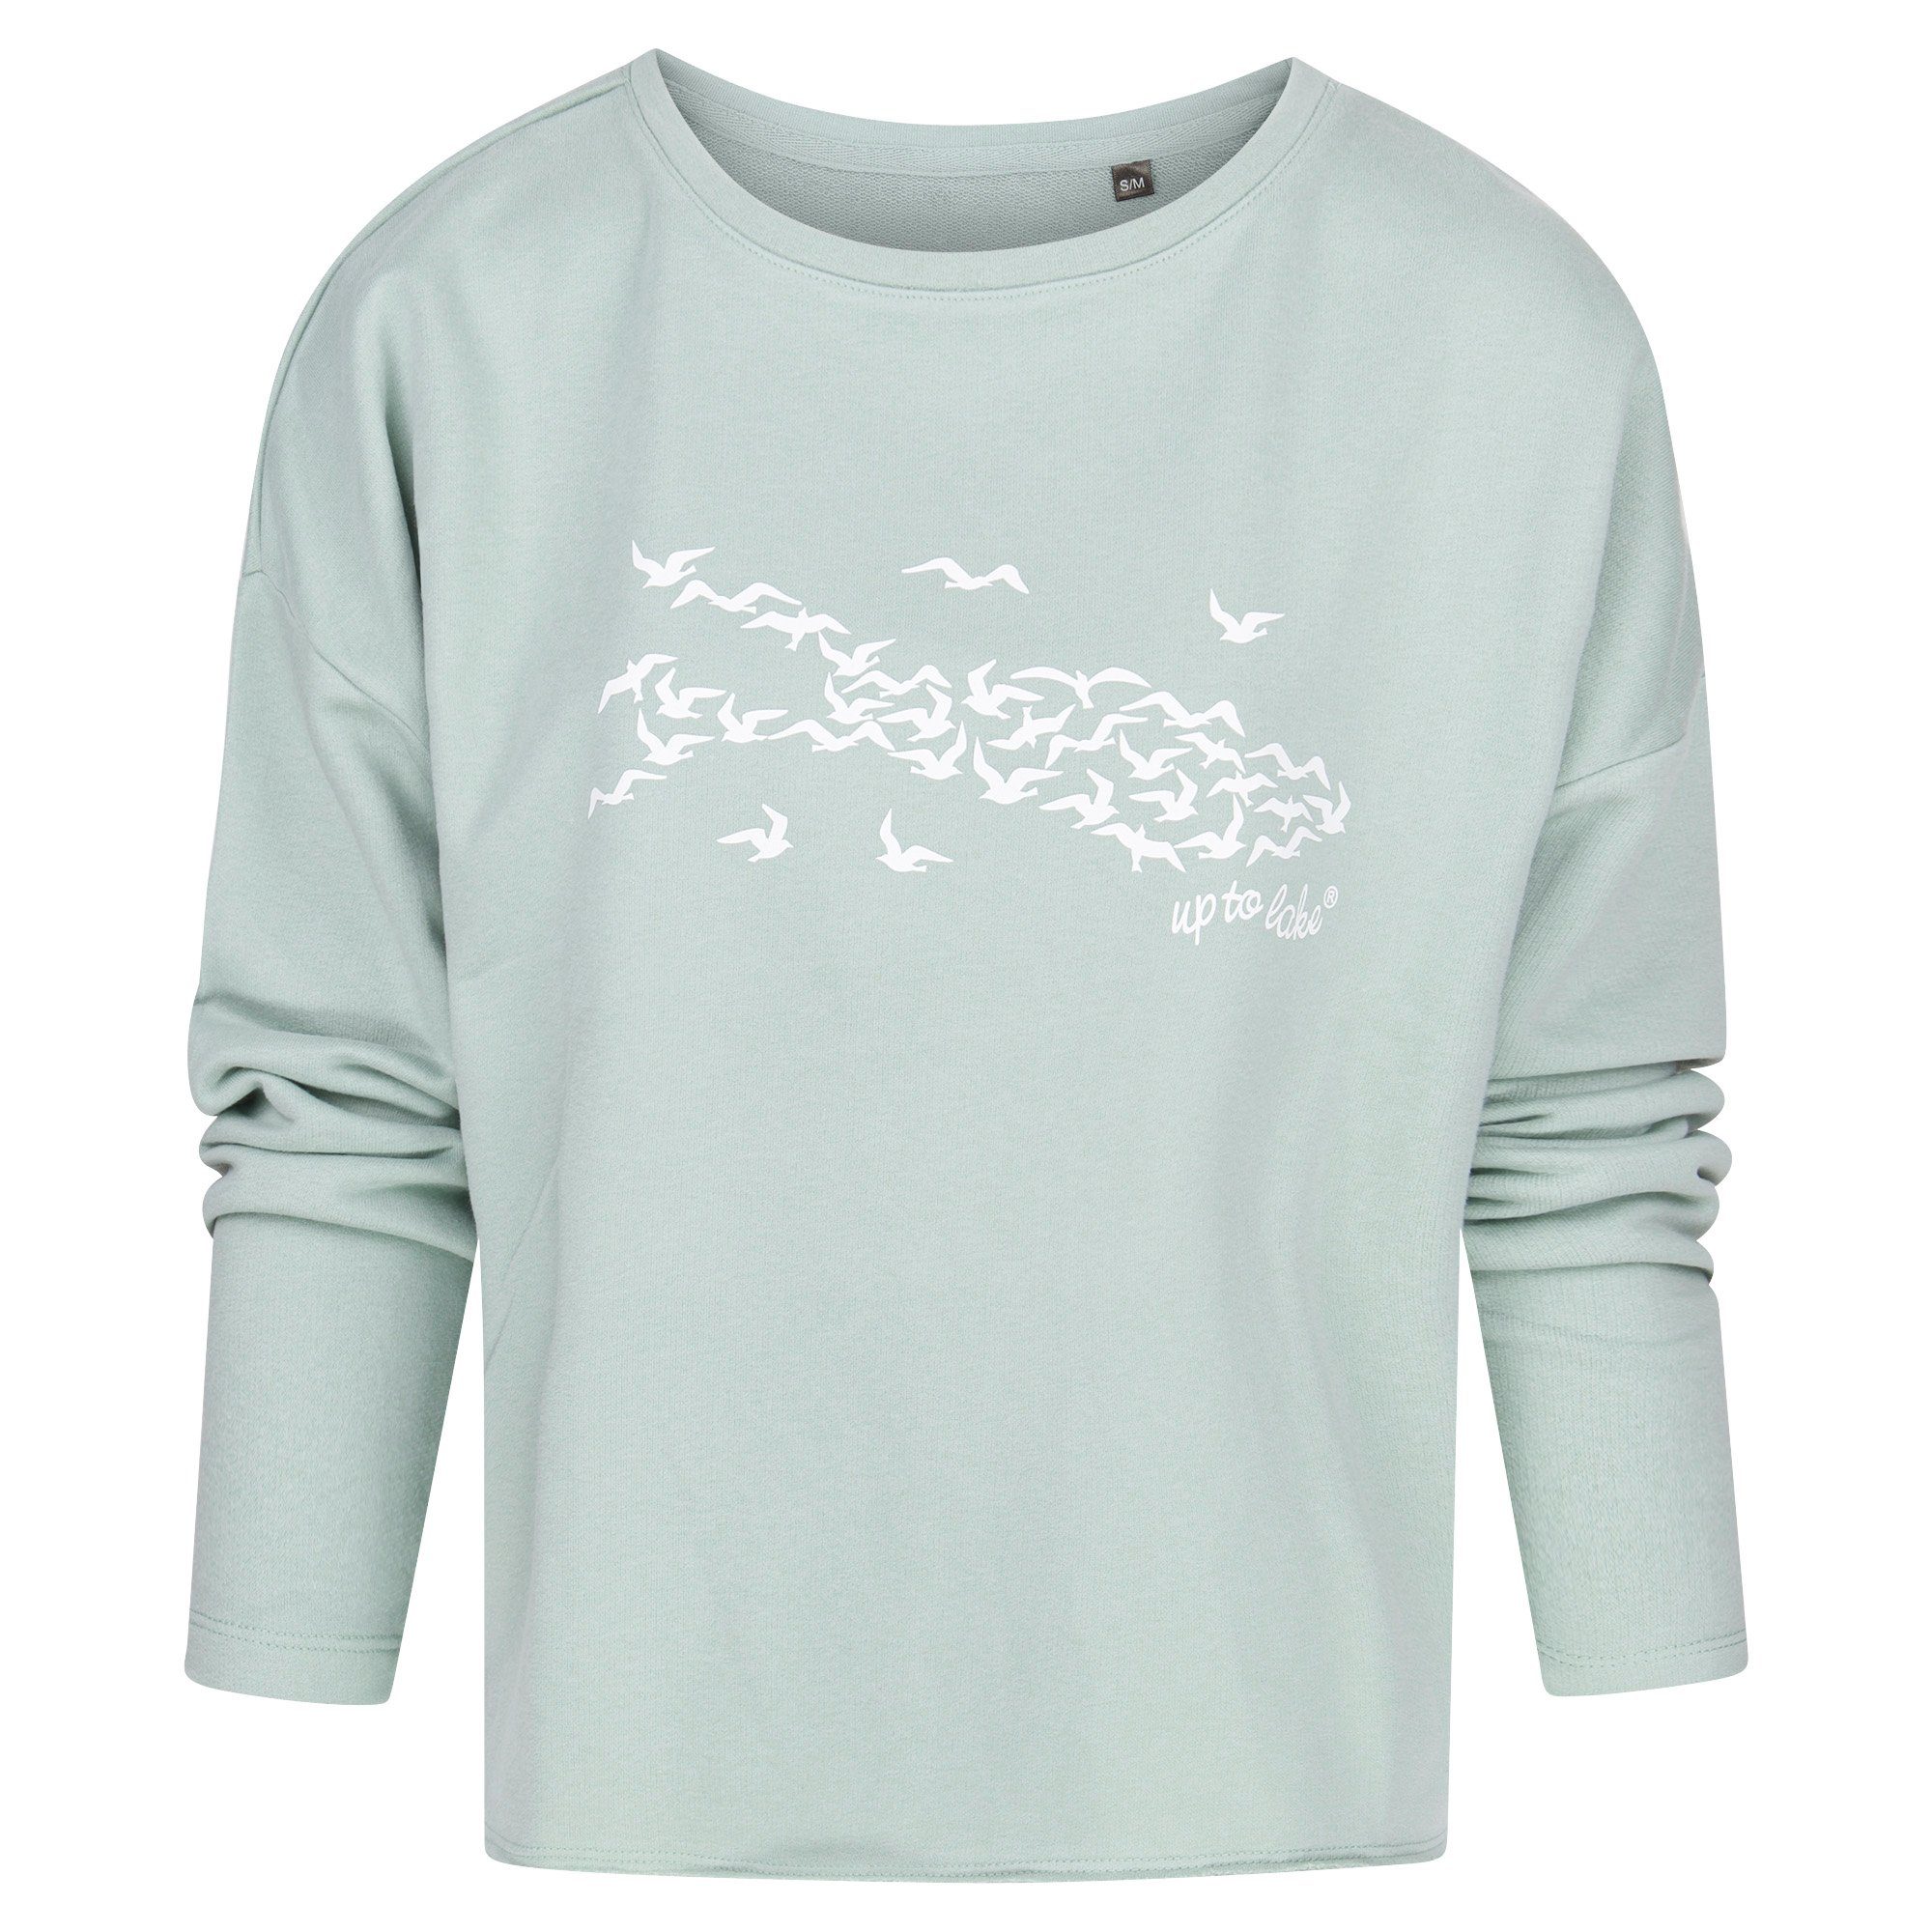 uptolake design Sweatshirt für Damen aus weichem Baumwollstoff mit "Mövensee-Bodensee" Design Sage/Weiß | Sweatshirts